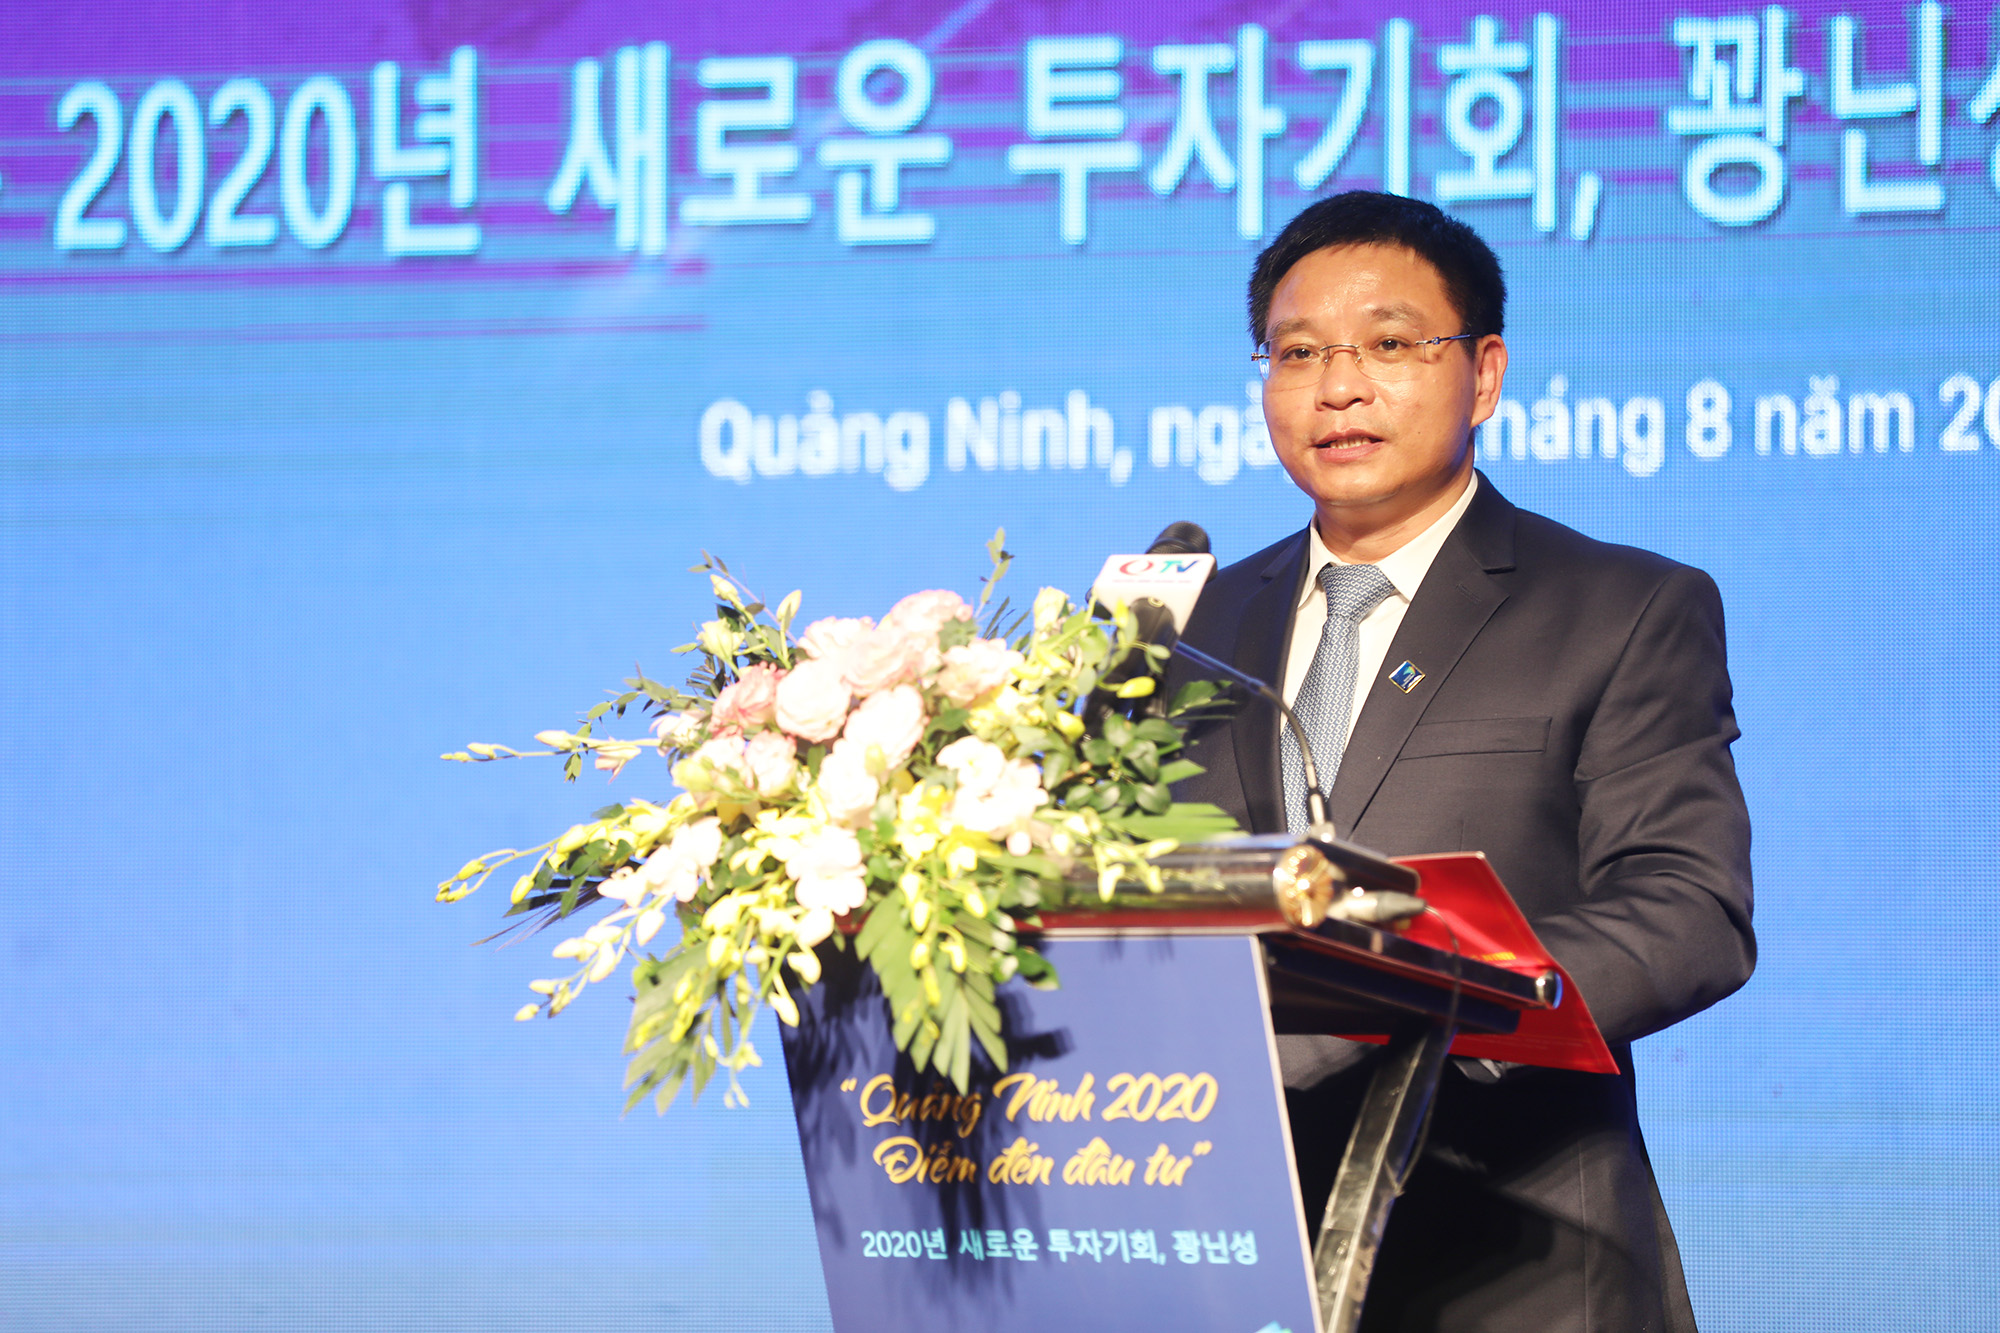 Đồng chí Nguyễn Văn Thắng, Phó Bí thư Tỉnh ủy, Chủ tịch UBND tỉnh phát biểu bế mạc hội nghị